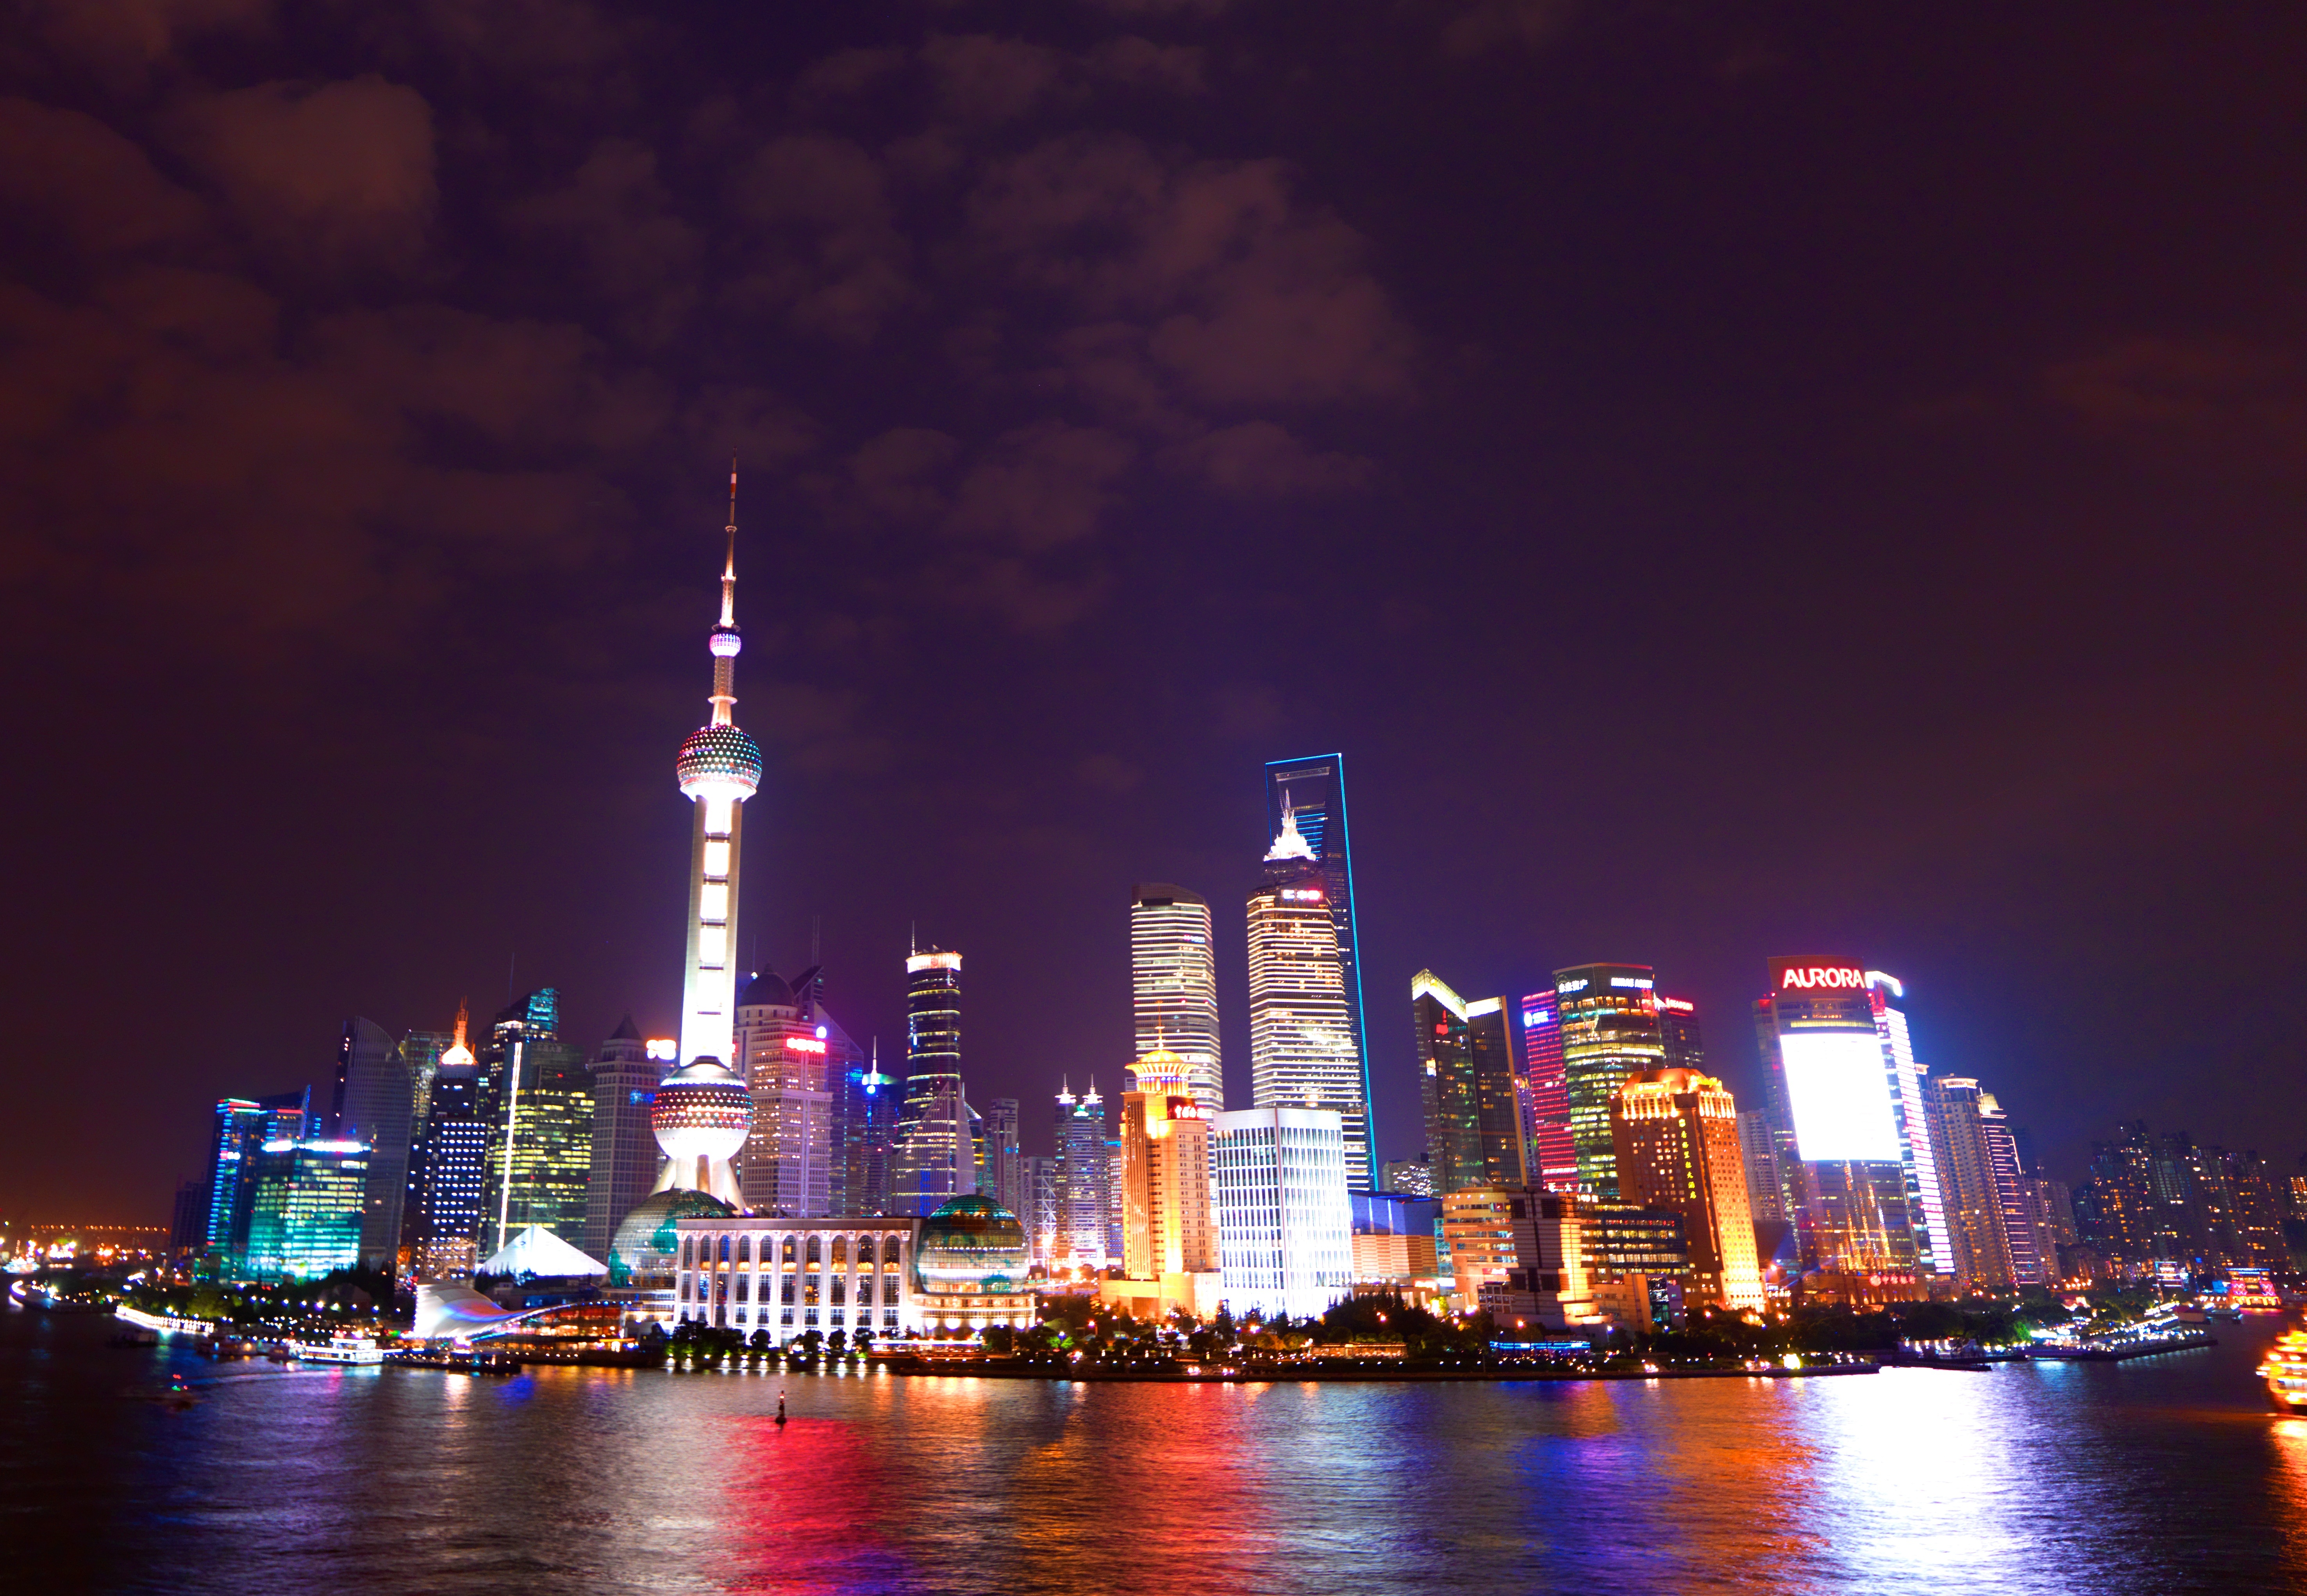 Shanghai Skyline Image Thecelebritypix